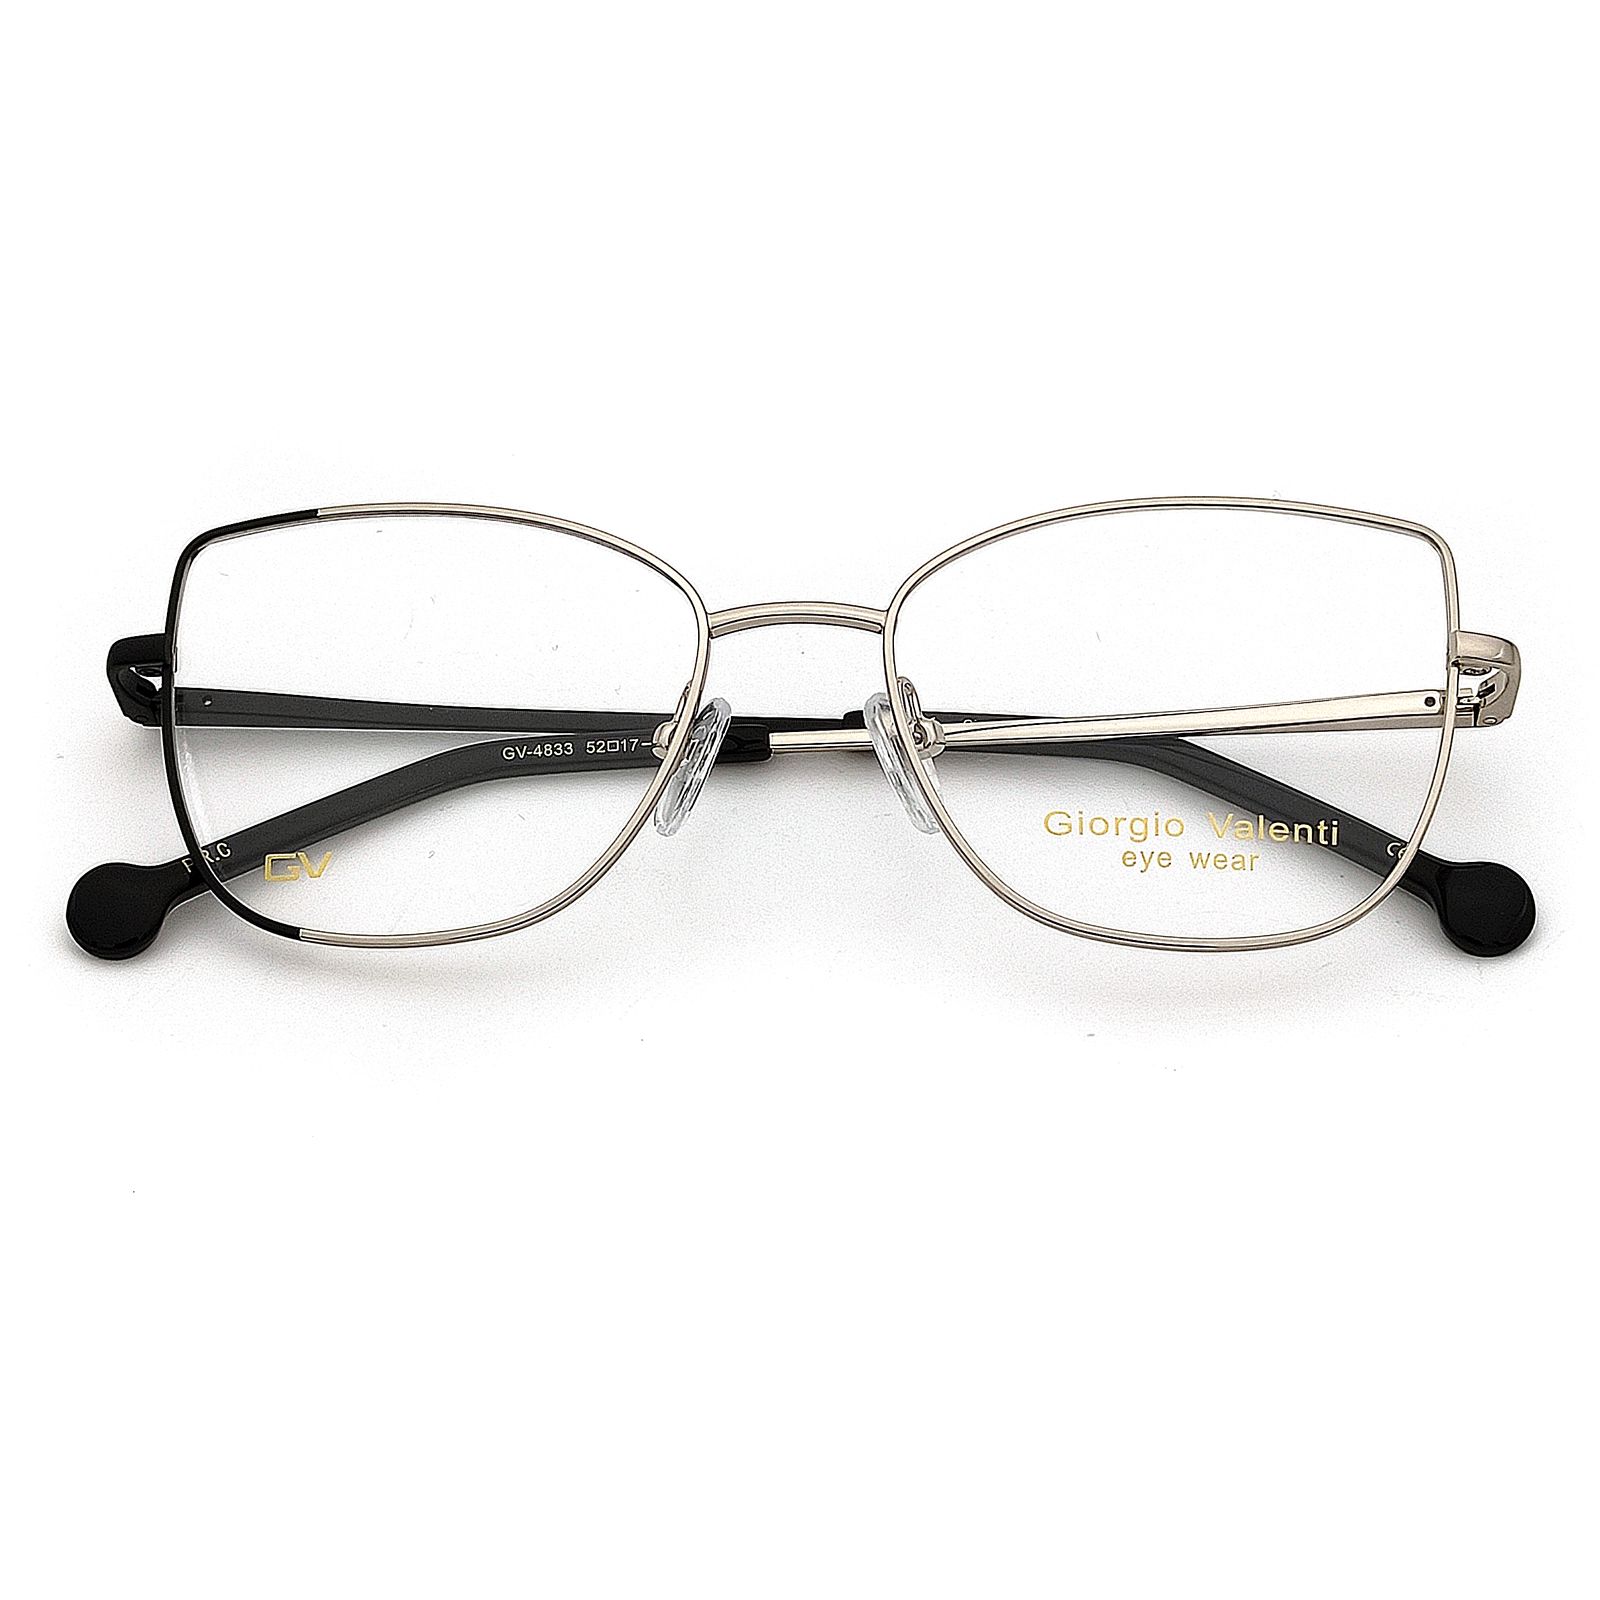 فریم عینک طبی زنانه جورجیو ولنتی مدل GV-4833 C7 -  - 2